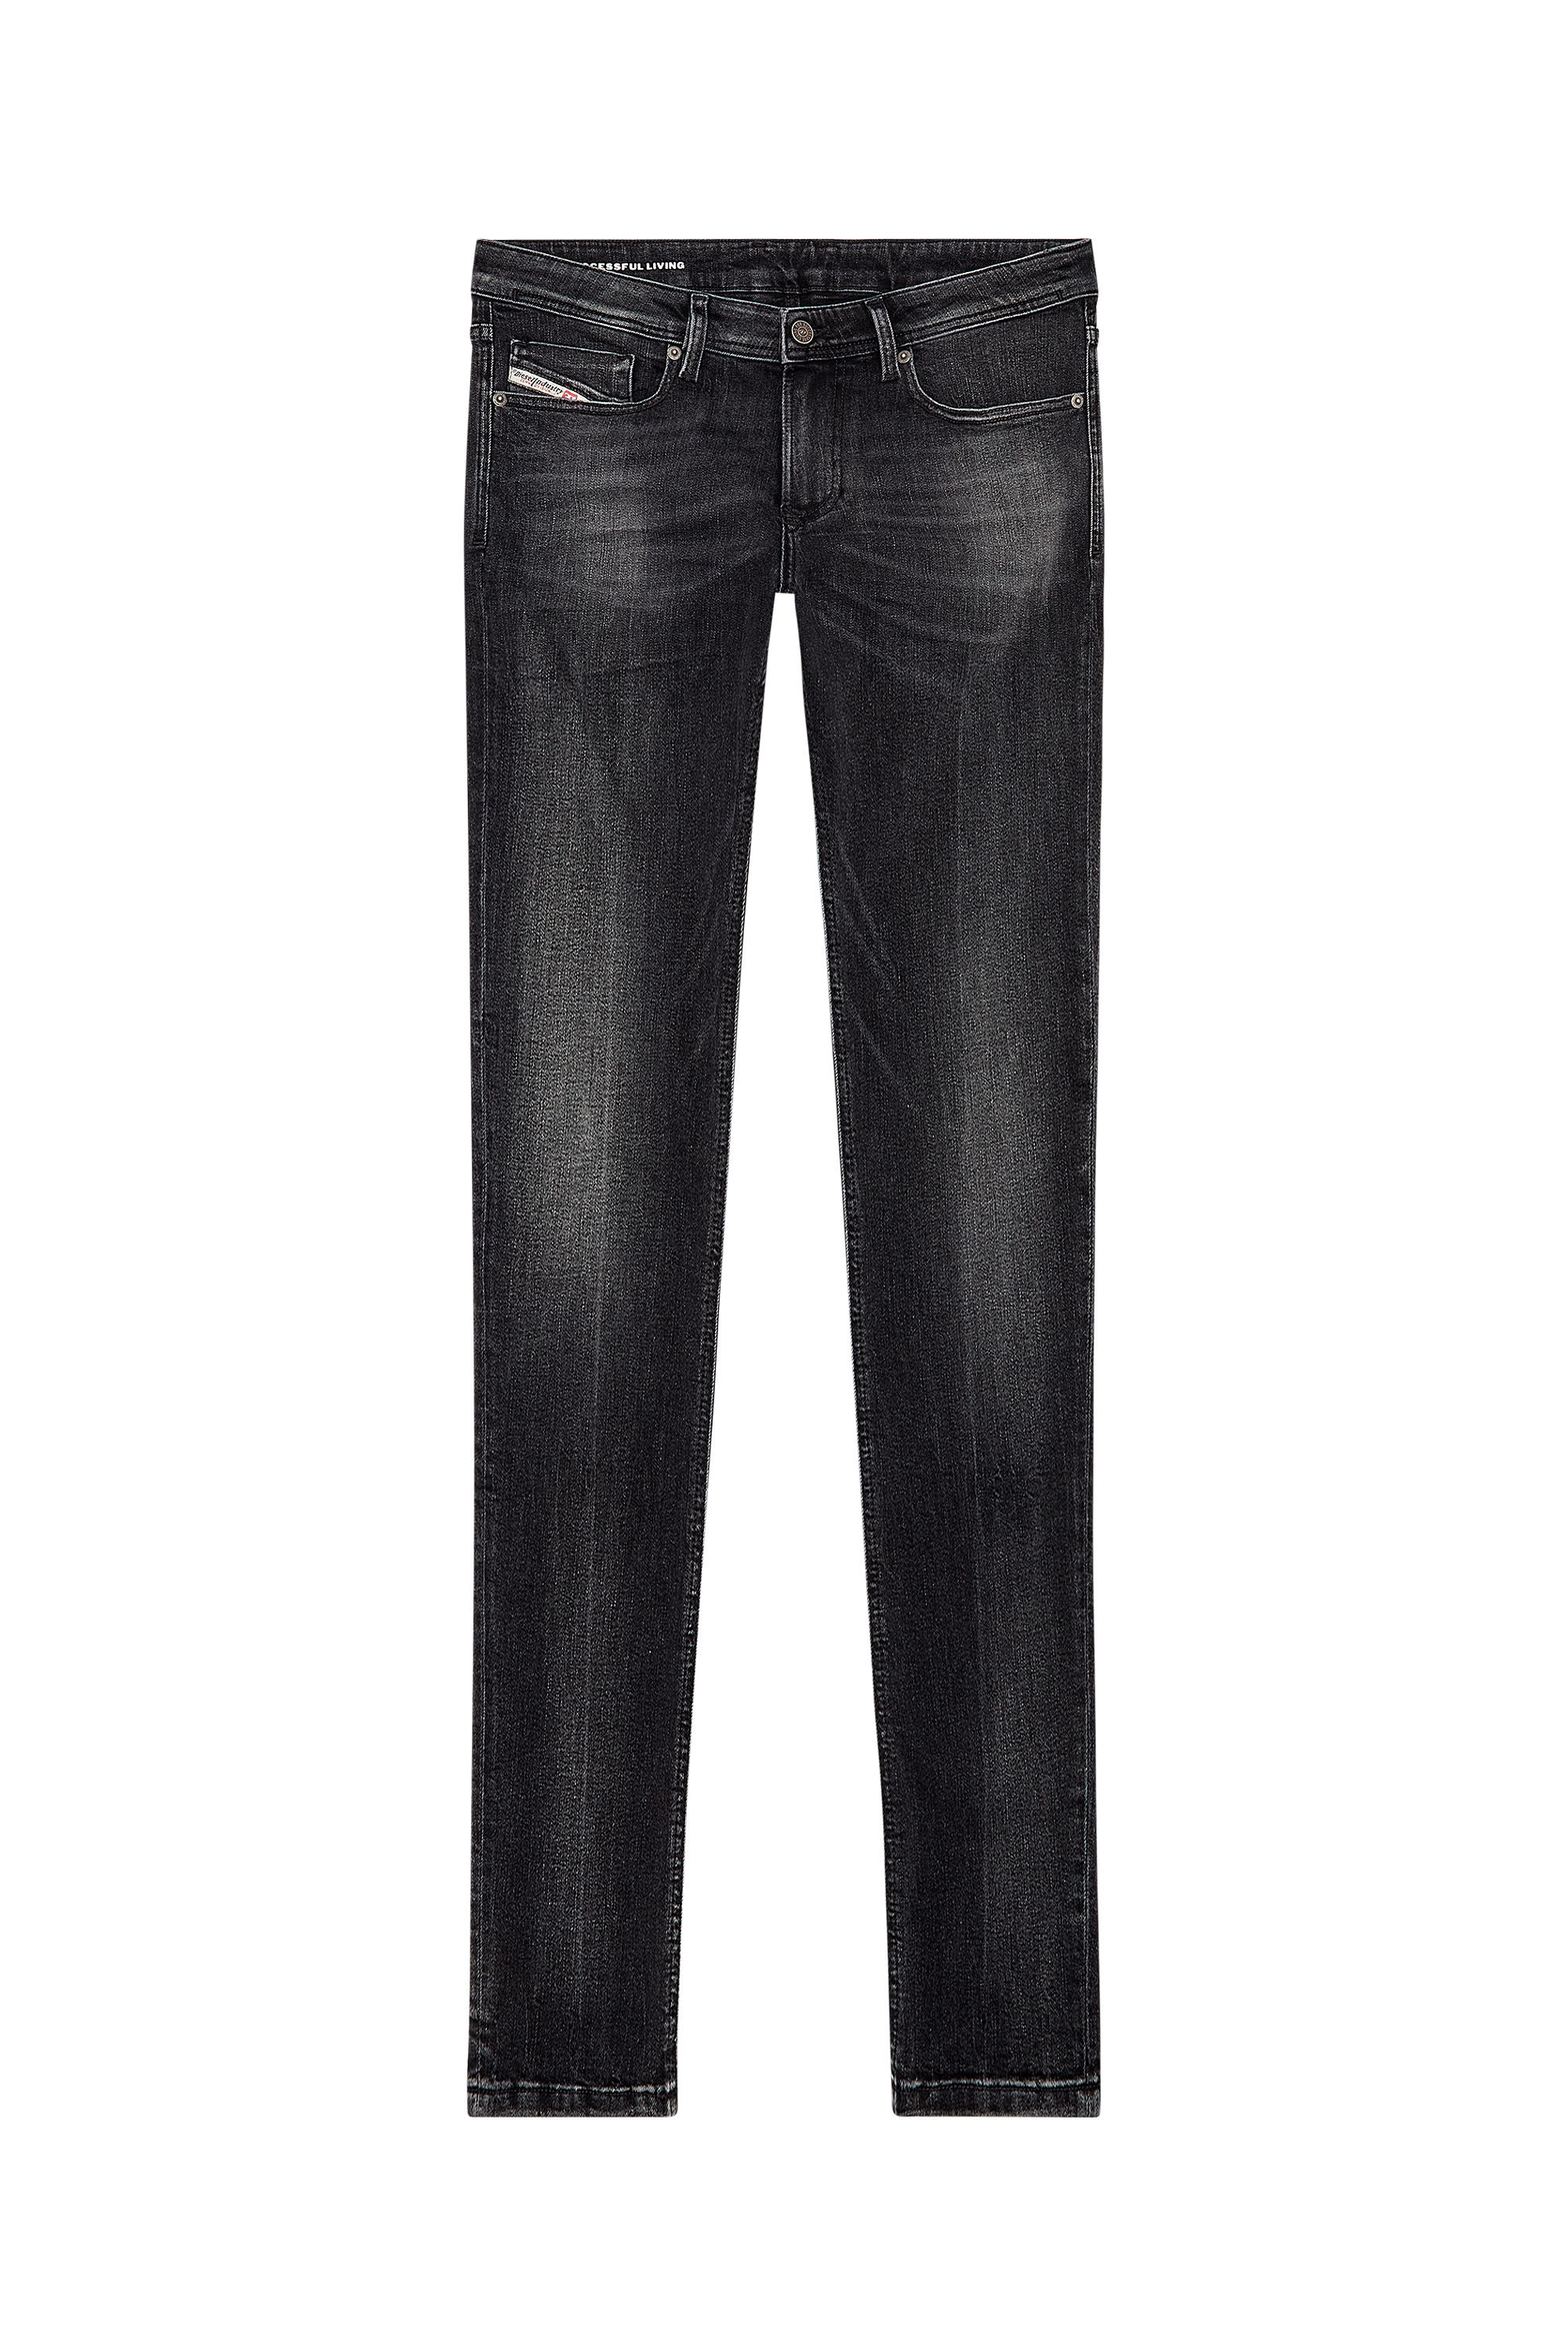 Diesel - Skinny Jeans 1979 Sleenker 0PFAX, Black/Dark grey - Image 2